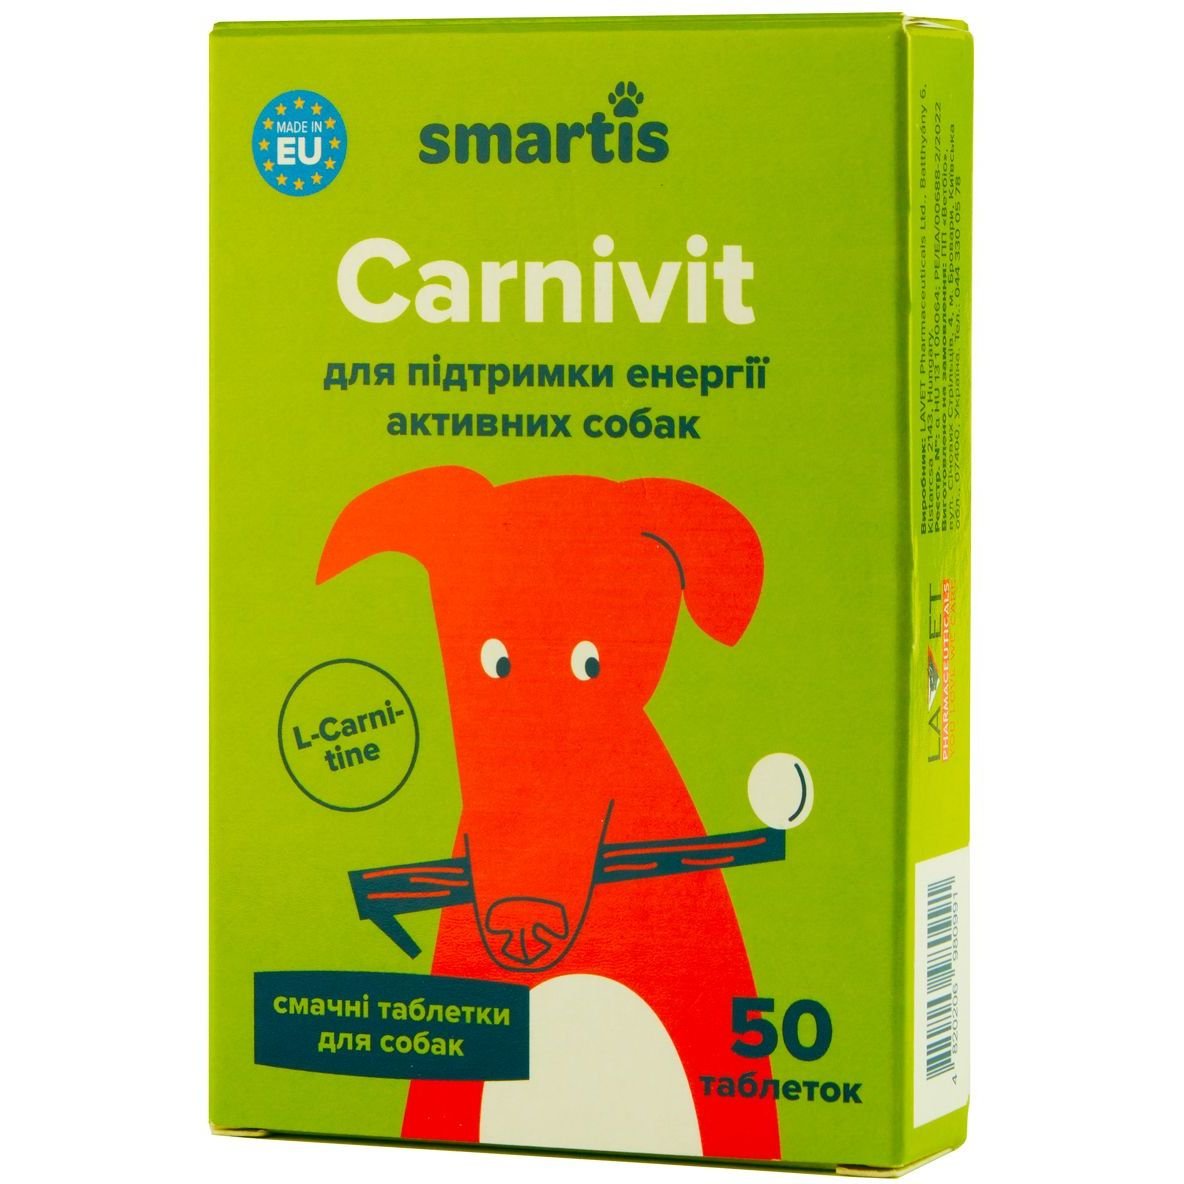 Дополнительный корм для собак Smartis Optimum с железом, 50 таблеток - фото 1